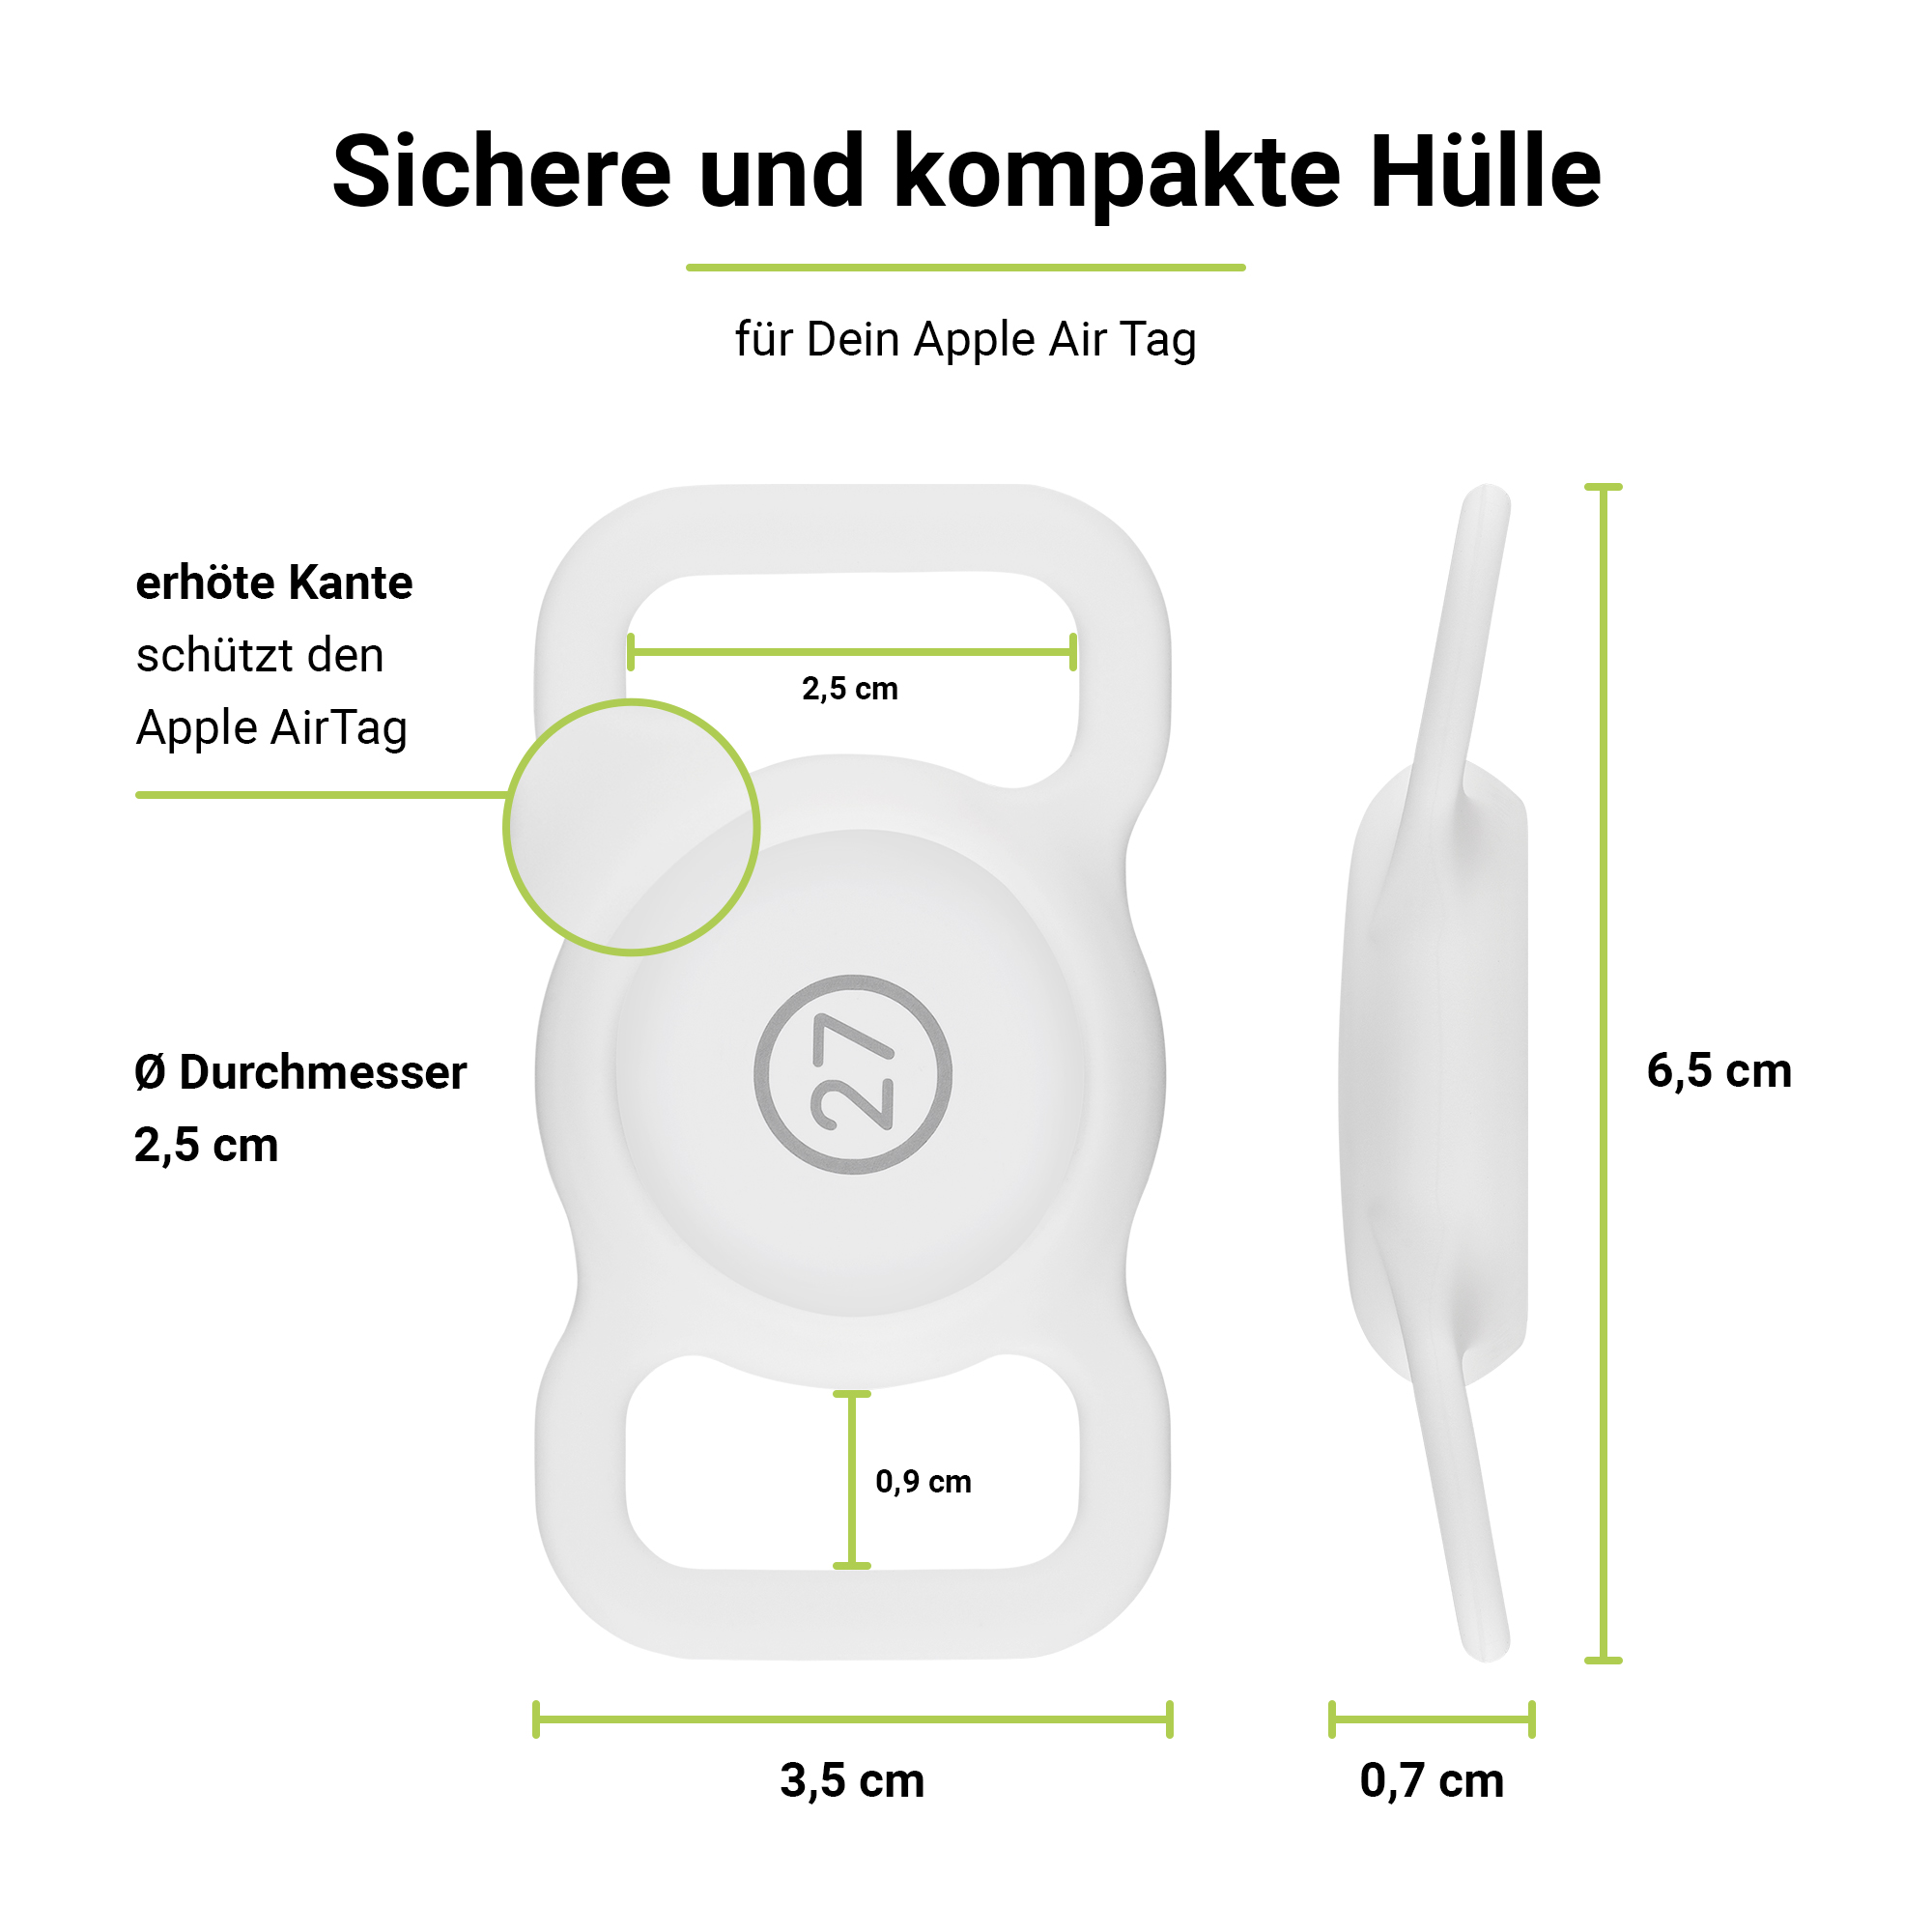 Apple PetStrap Befestigung von AirTag Halterung / ARTWIZZ als Weiß GPS-Tracker Halsband Lila